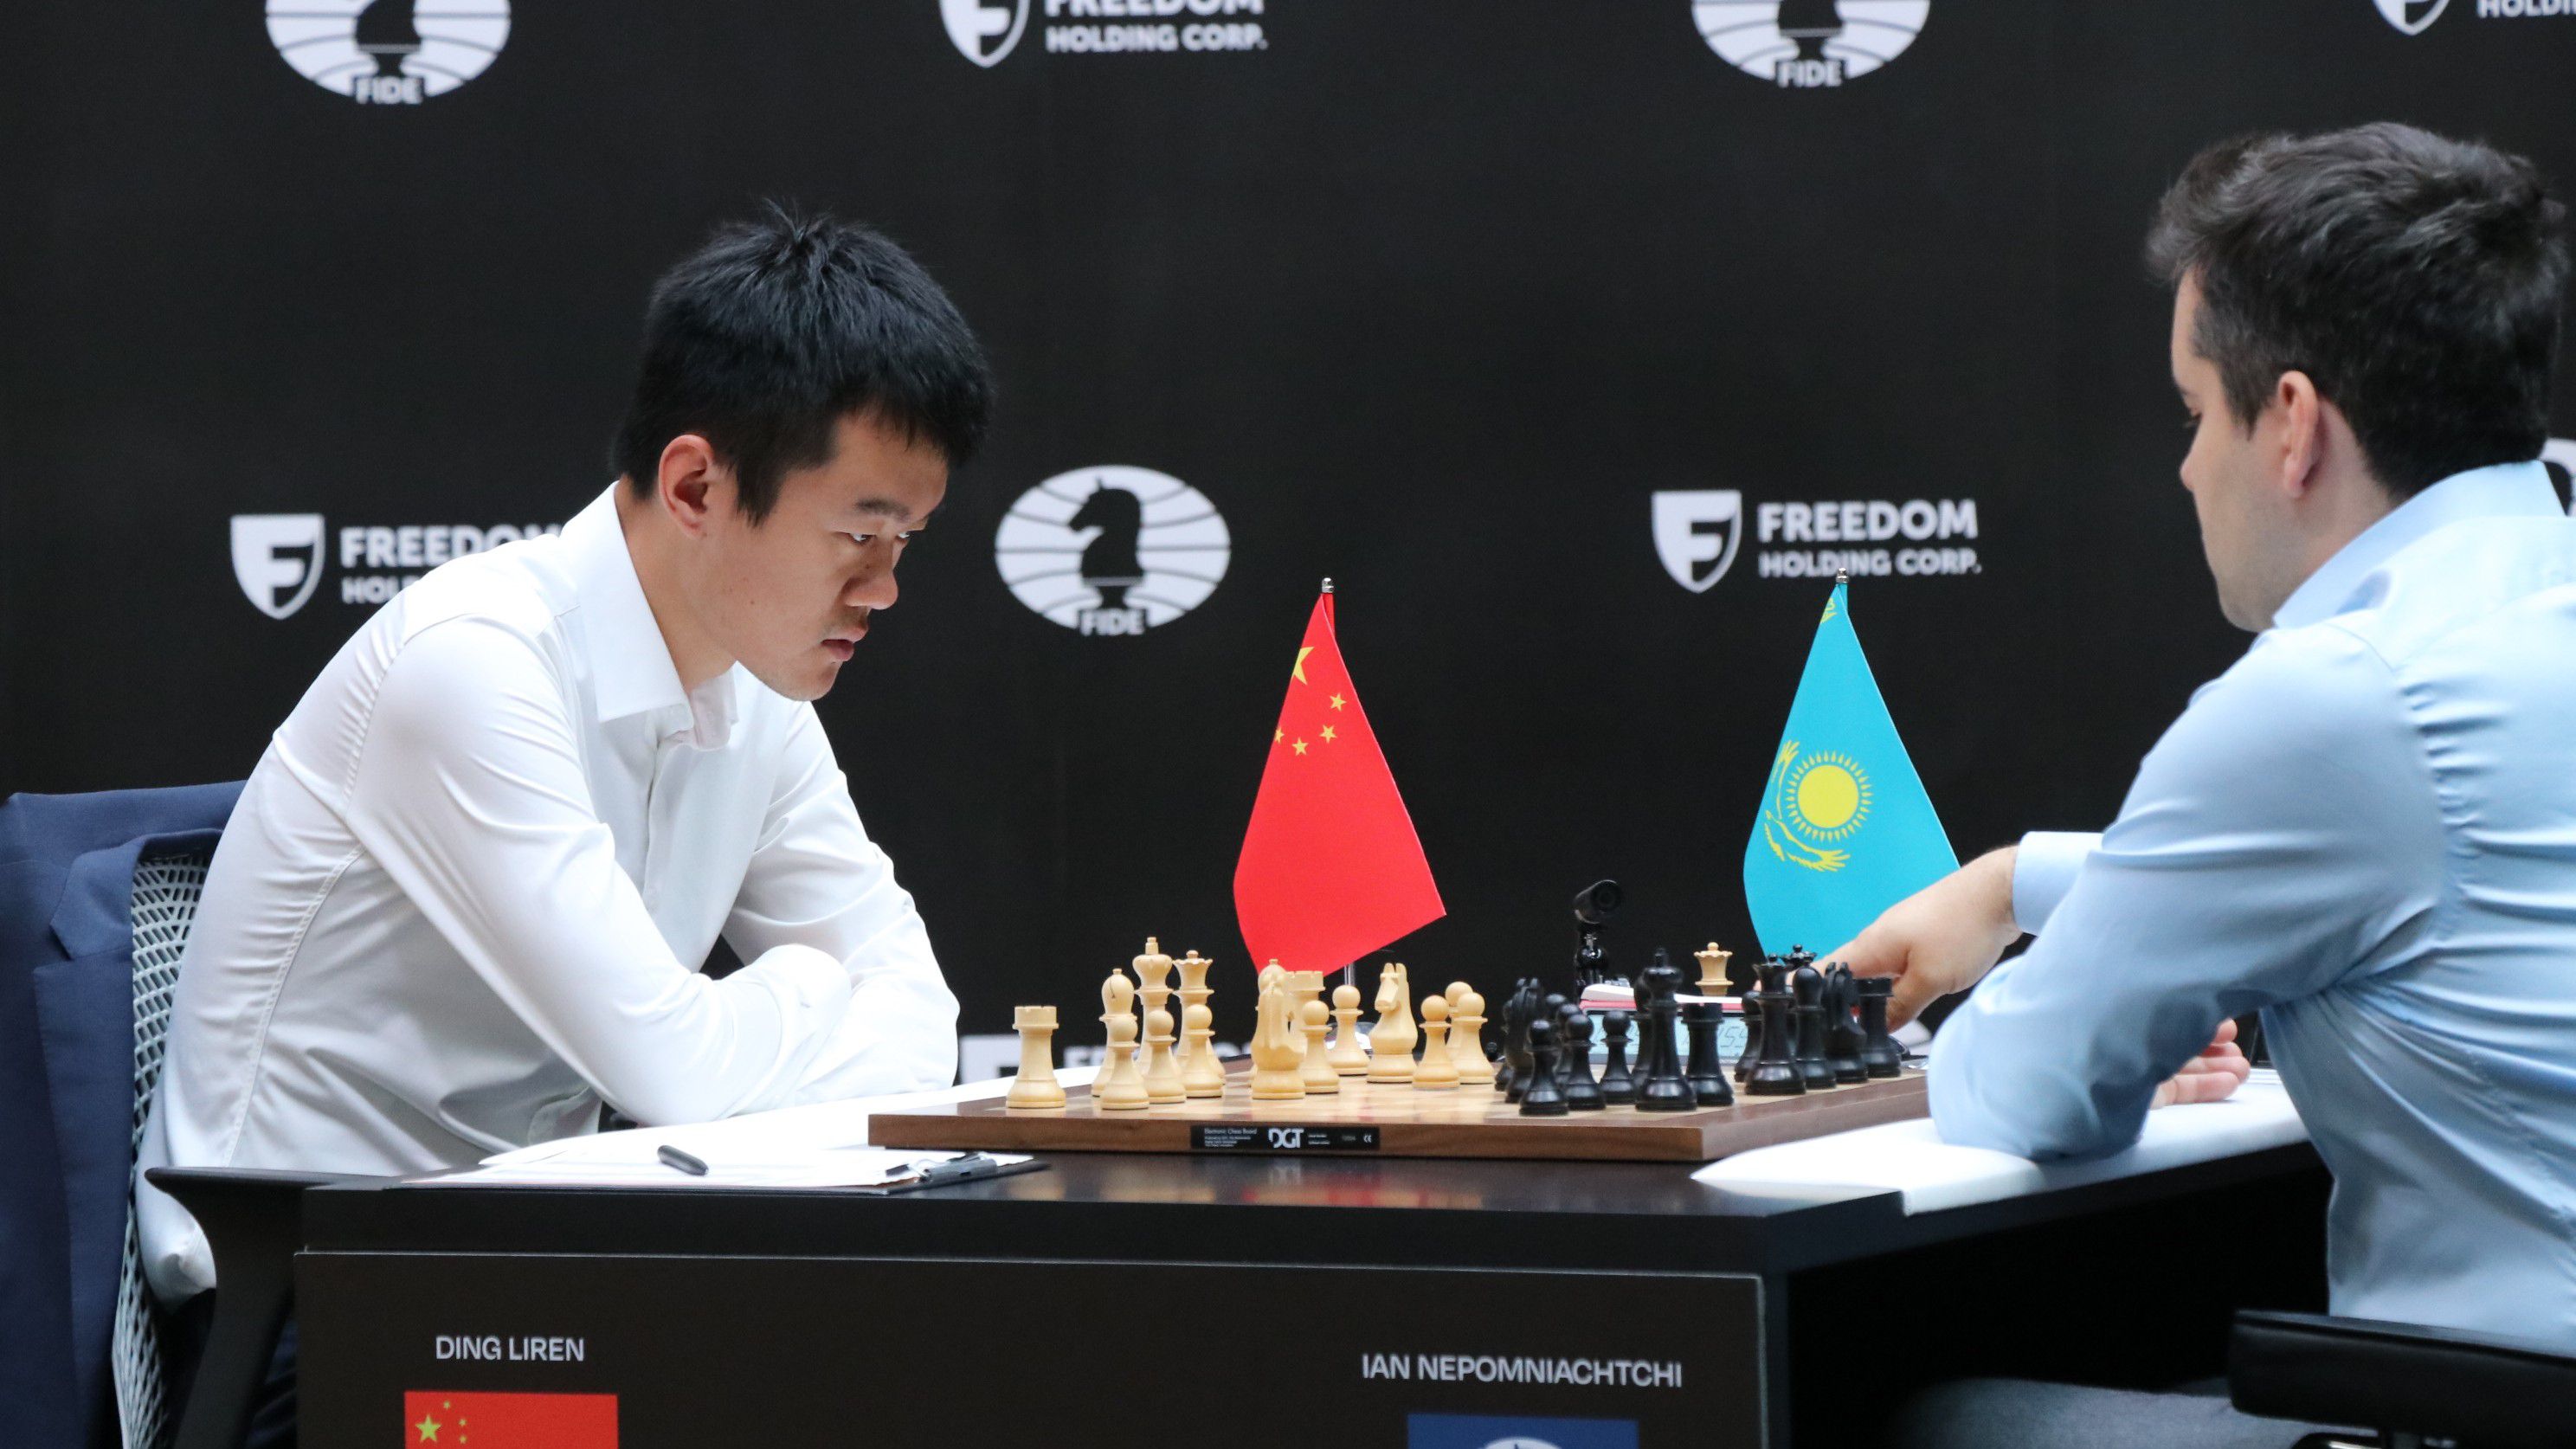 Sakk-vb-döntő: Ting Li-zsen legyőzte Nyepomnyascsijt, ő lett az első kínai férfi világbajnok